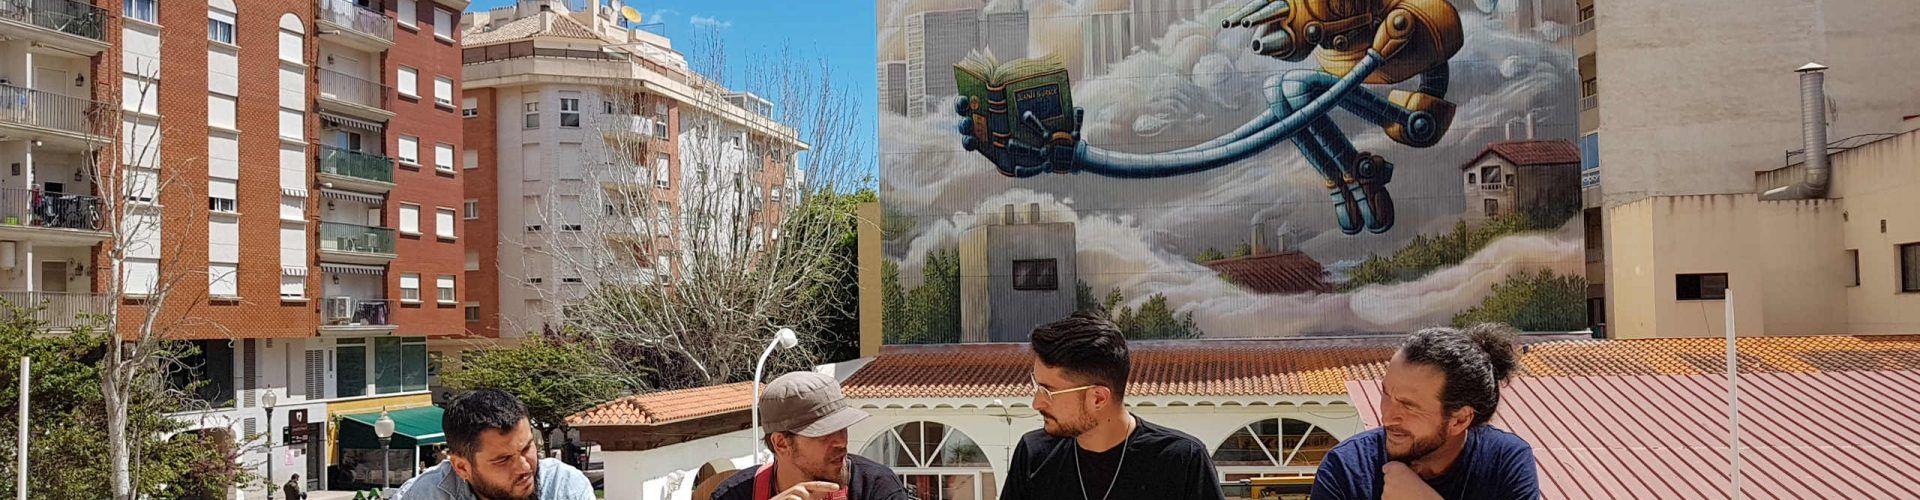 El argentino Juanjo Surace concluye el gran mural del ‘Vinaròs Art Urbà 2019’ 